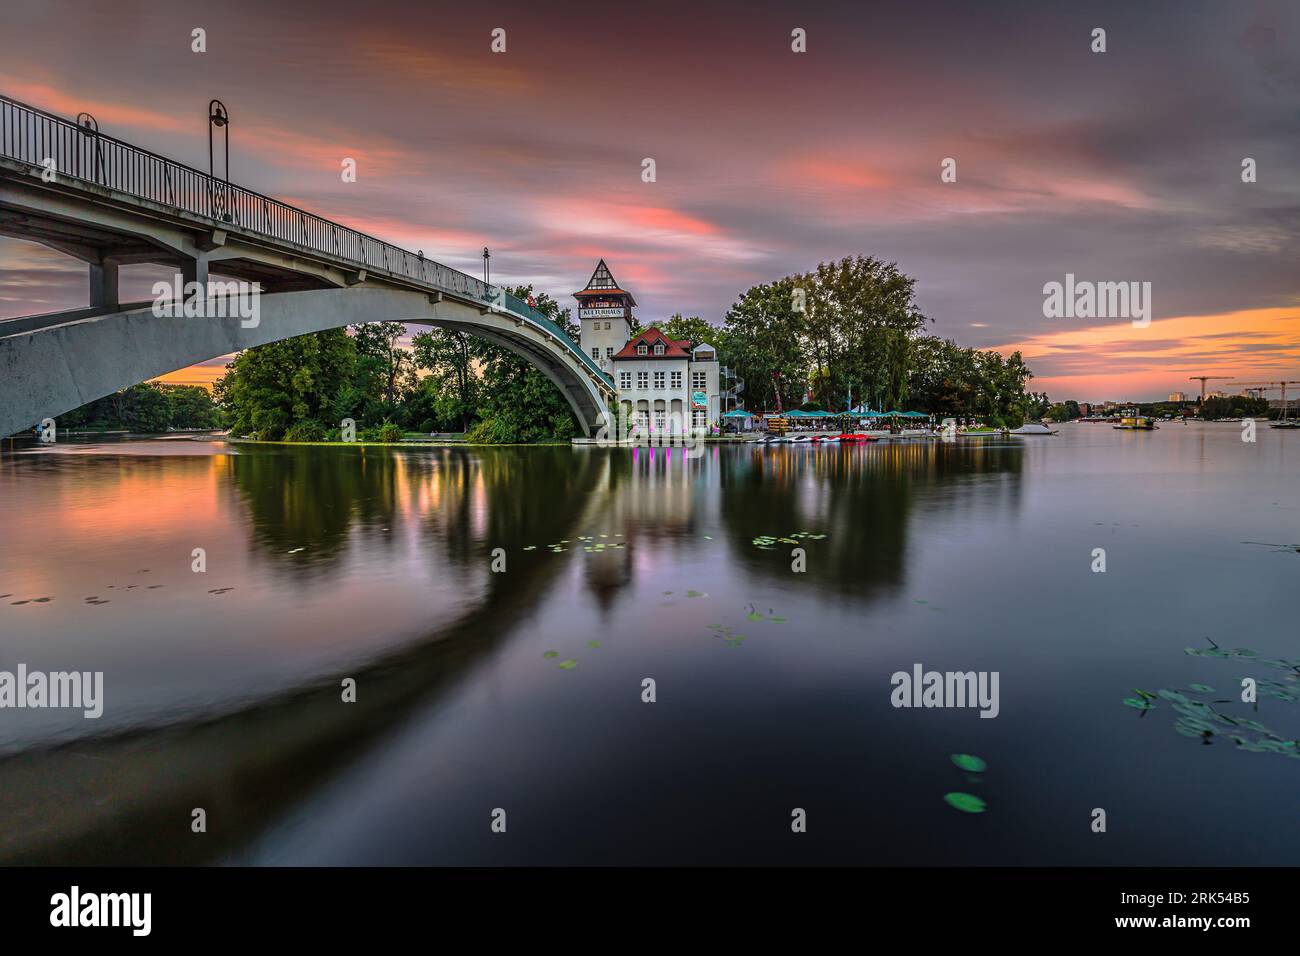 Sonnenuntergang in Berlin mit farbenfrohem Himmel. Brücke über die Spree zur Insel der Jugend am Abend im Sommer. Beleuchtetes Kulturhaus mit Biergarten Stockfoto